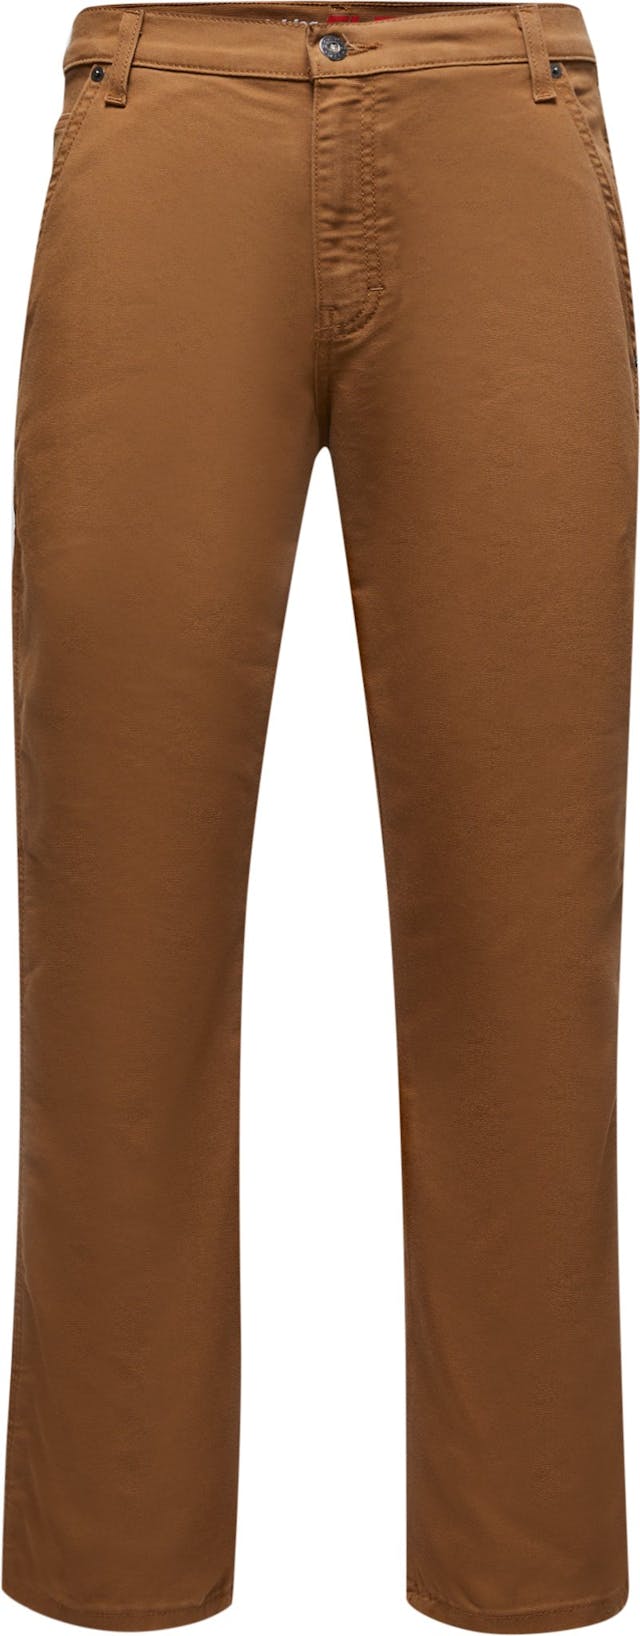 Image de produit pour Pantalon menuisier FLEX, coupe standard, jambe droite, en coutil Tough Max - Homme